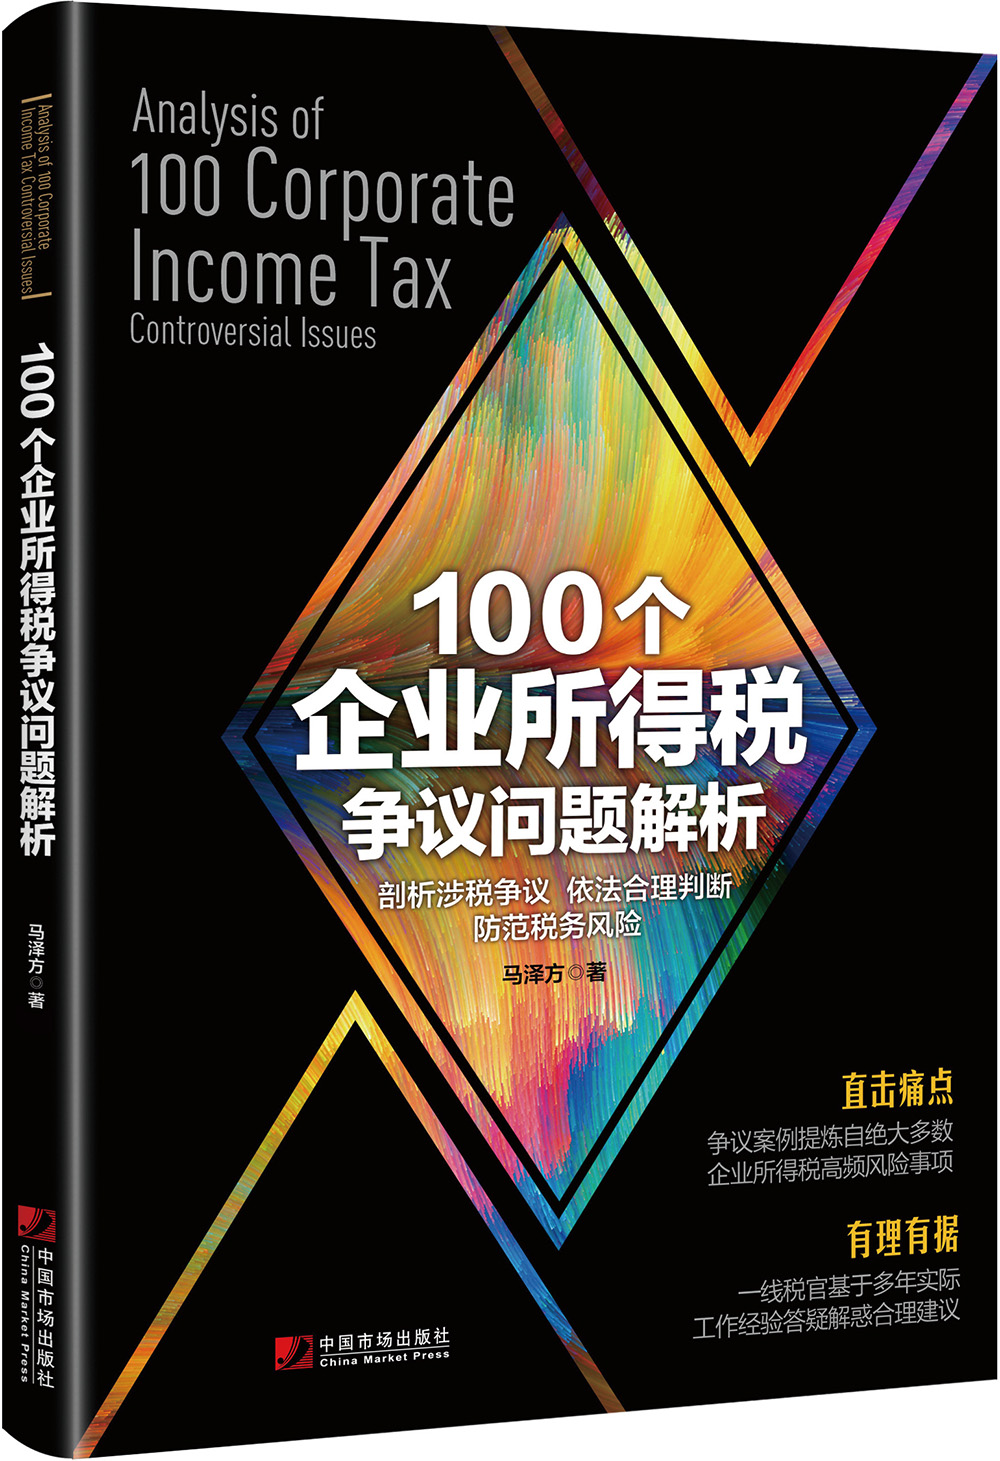 哪里可以看到京东财政税收商品的历史价格|财政税收价格历史